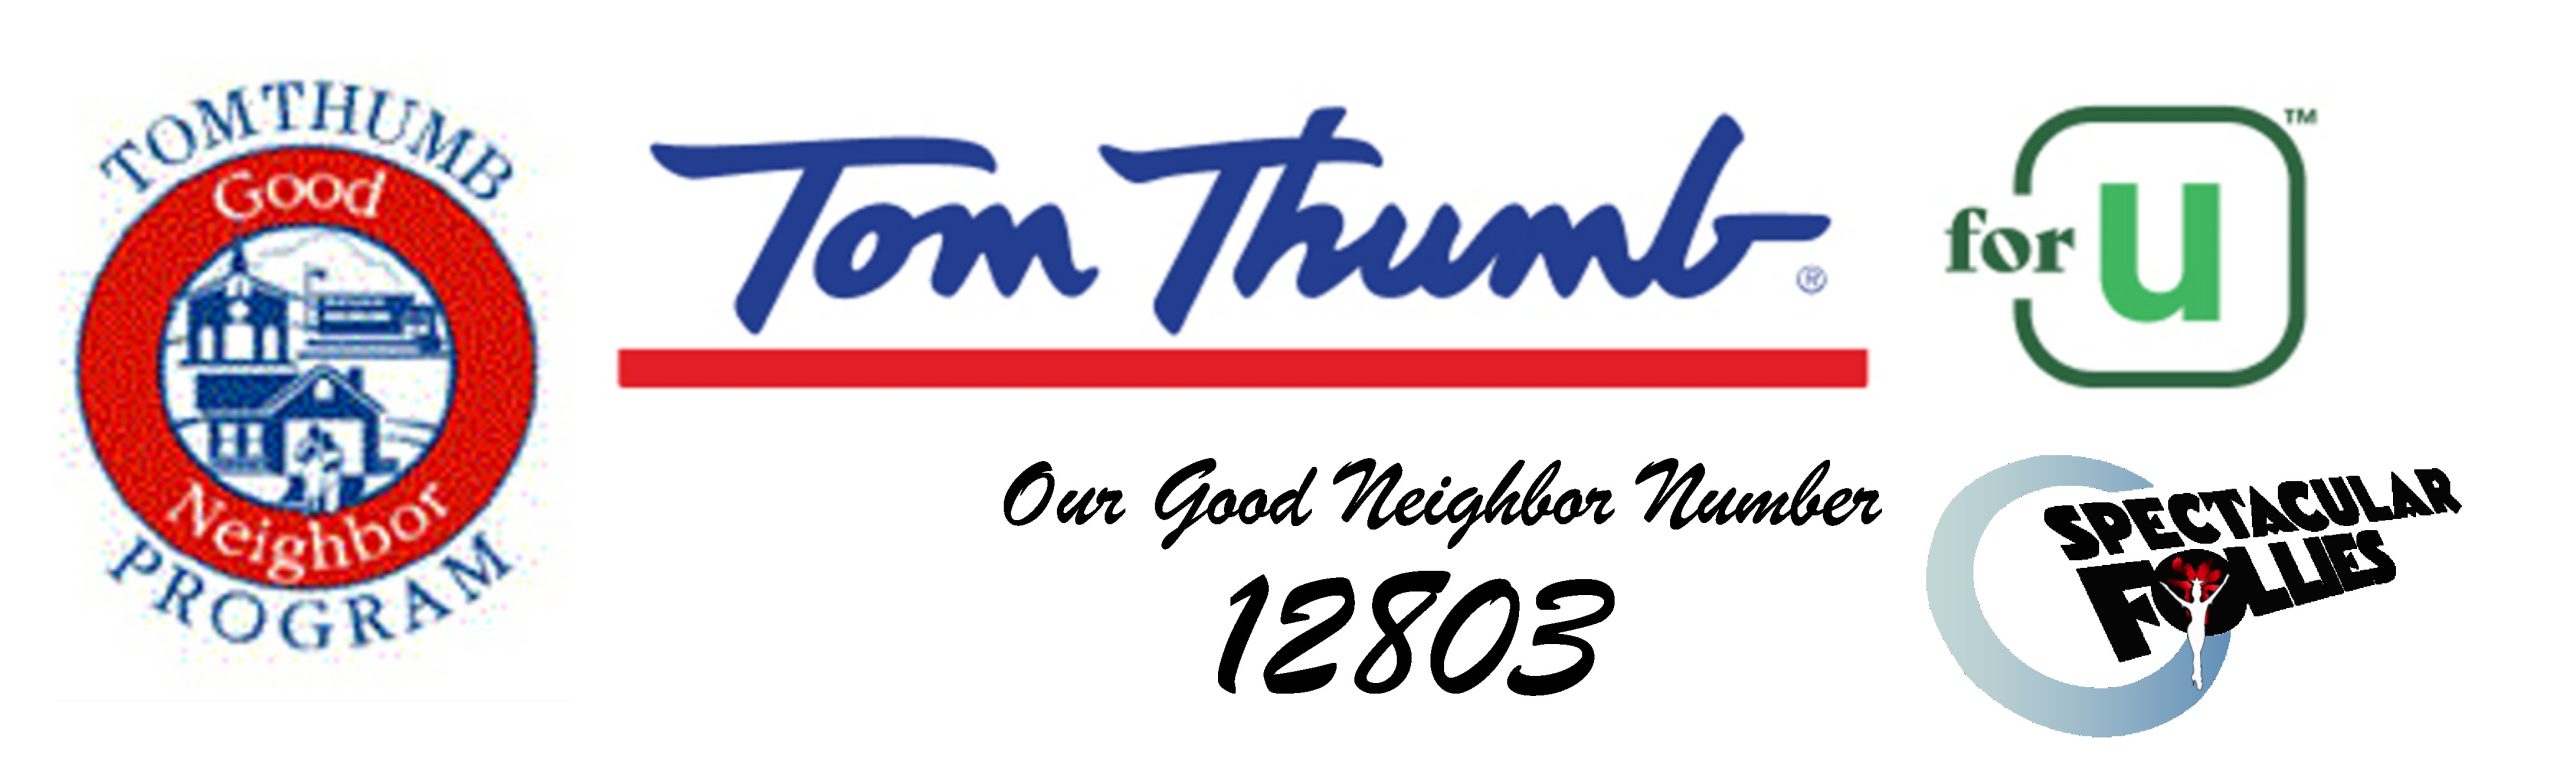 tom-thumb